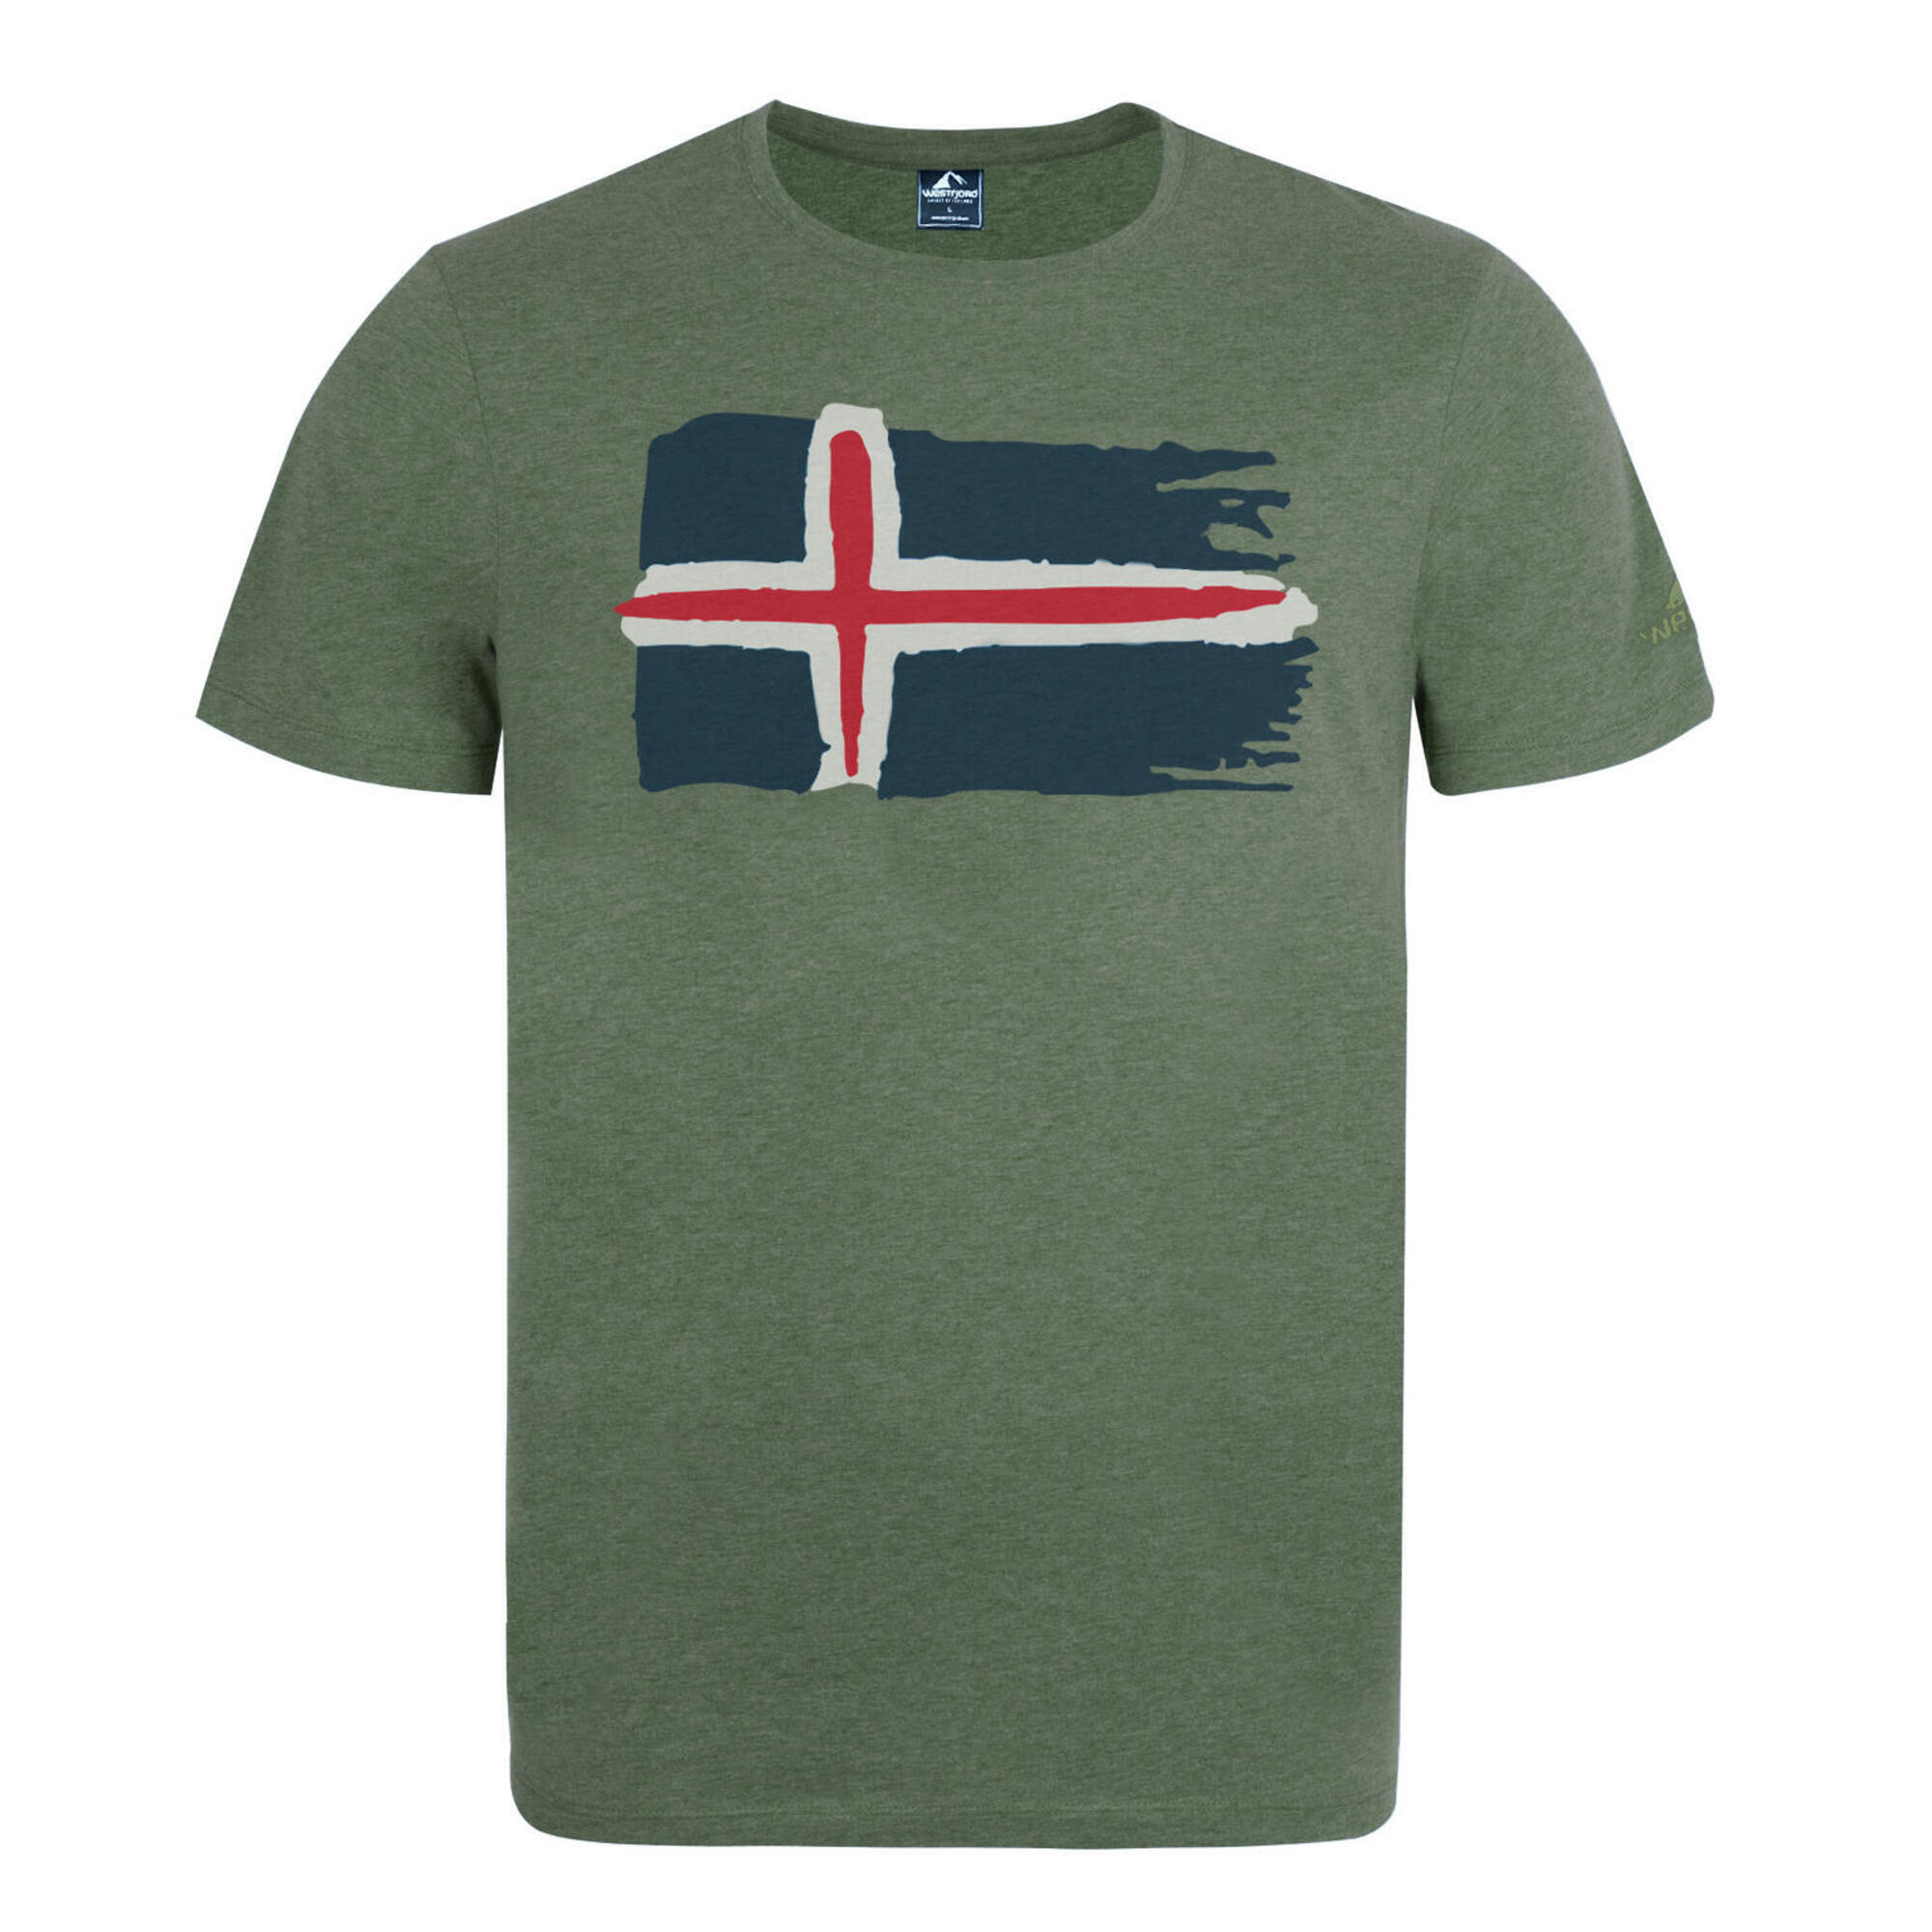 мужская футболка засыпающий крыс s зеленый Футболка Westfjord Hekla мужская, зеленый